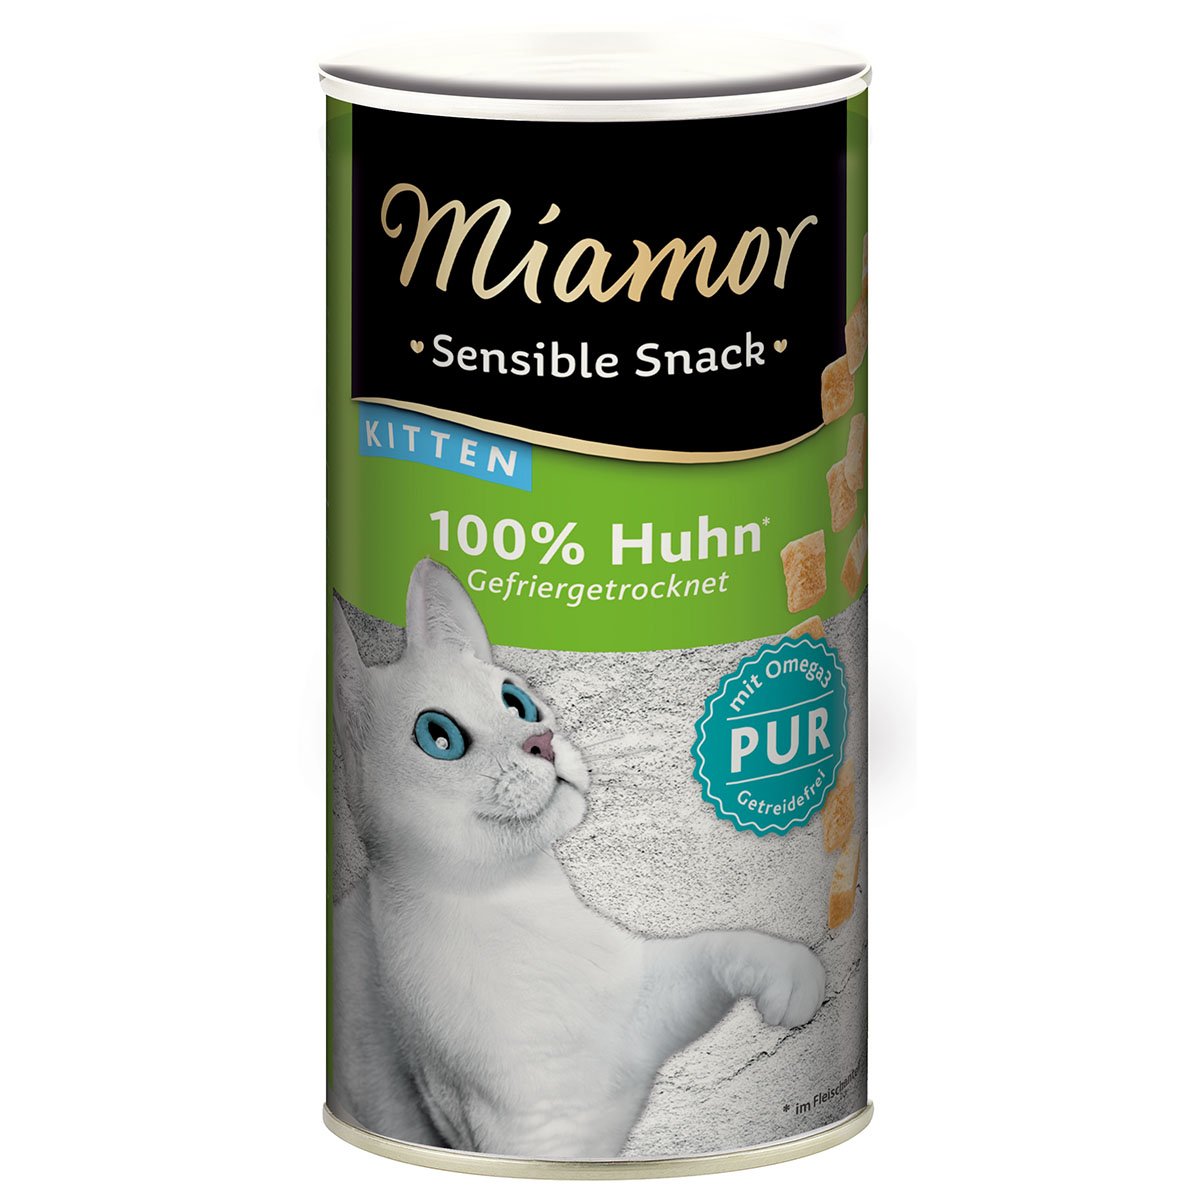 Miamor Sensible Snack Kitten Huhn Pur 12x30g von Miamor